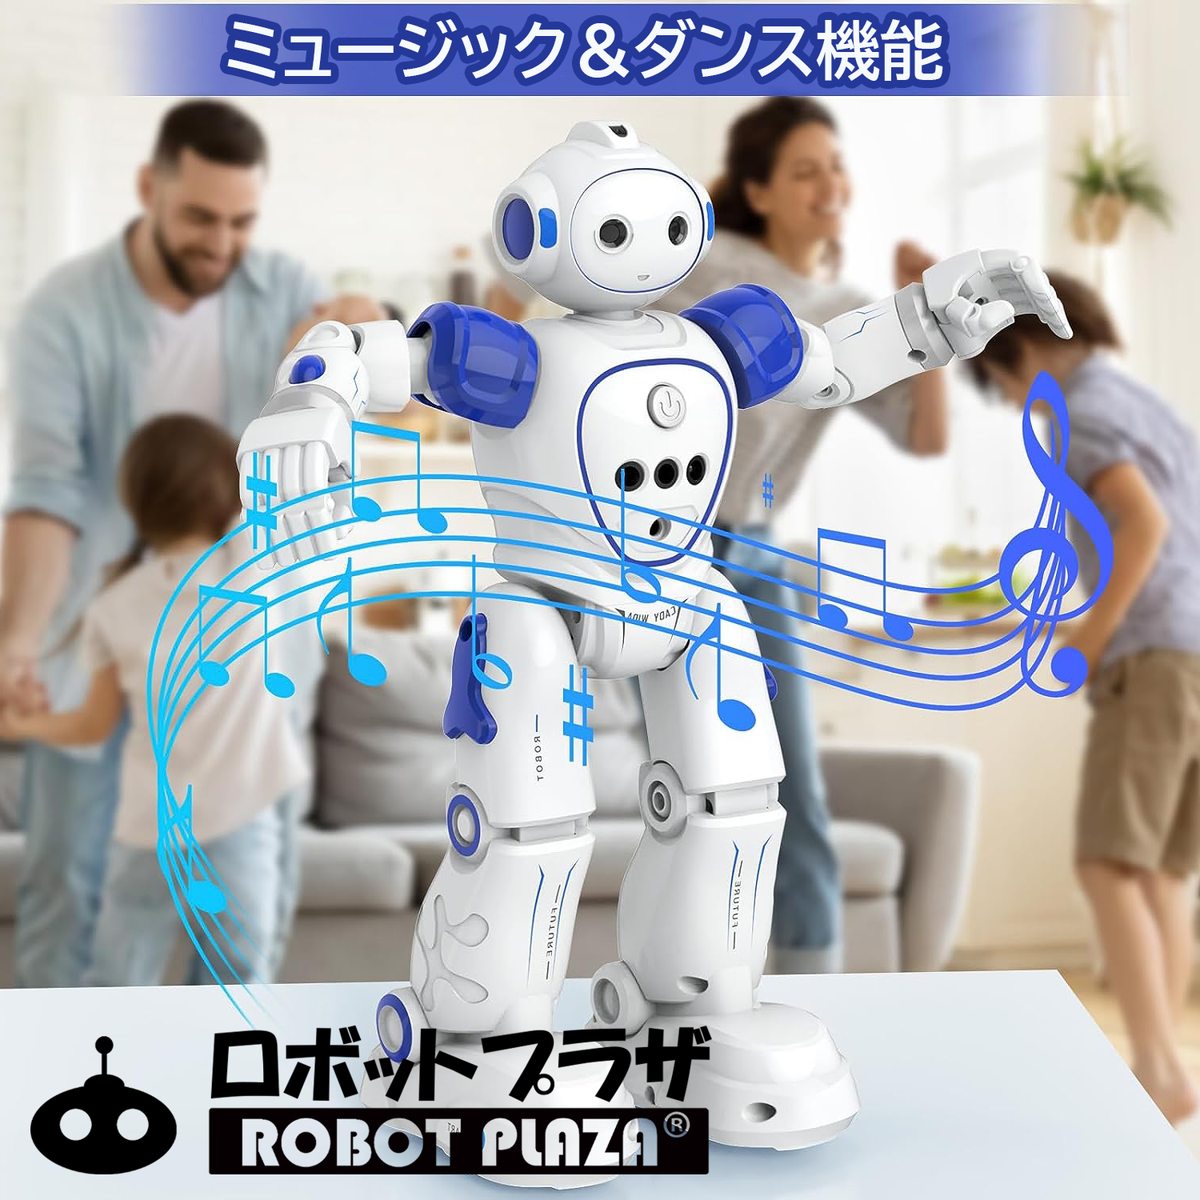 歩く人型ロボットおもちゃ、ミュージックとダンス機能付き